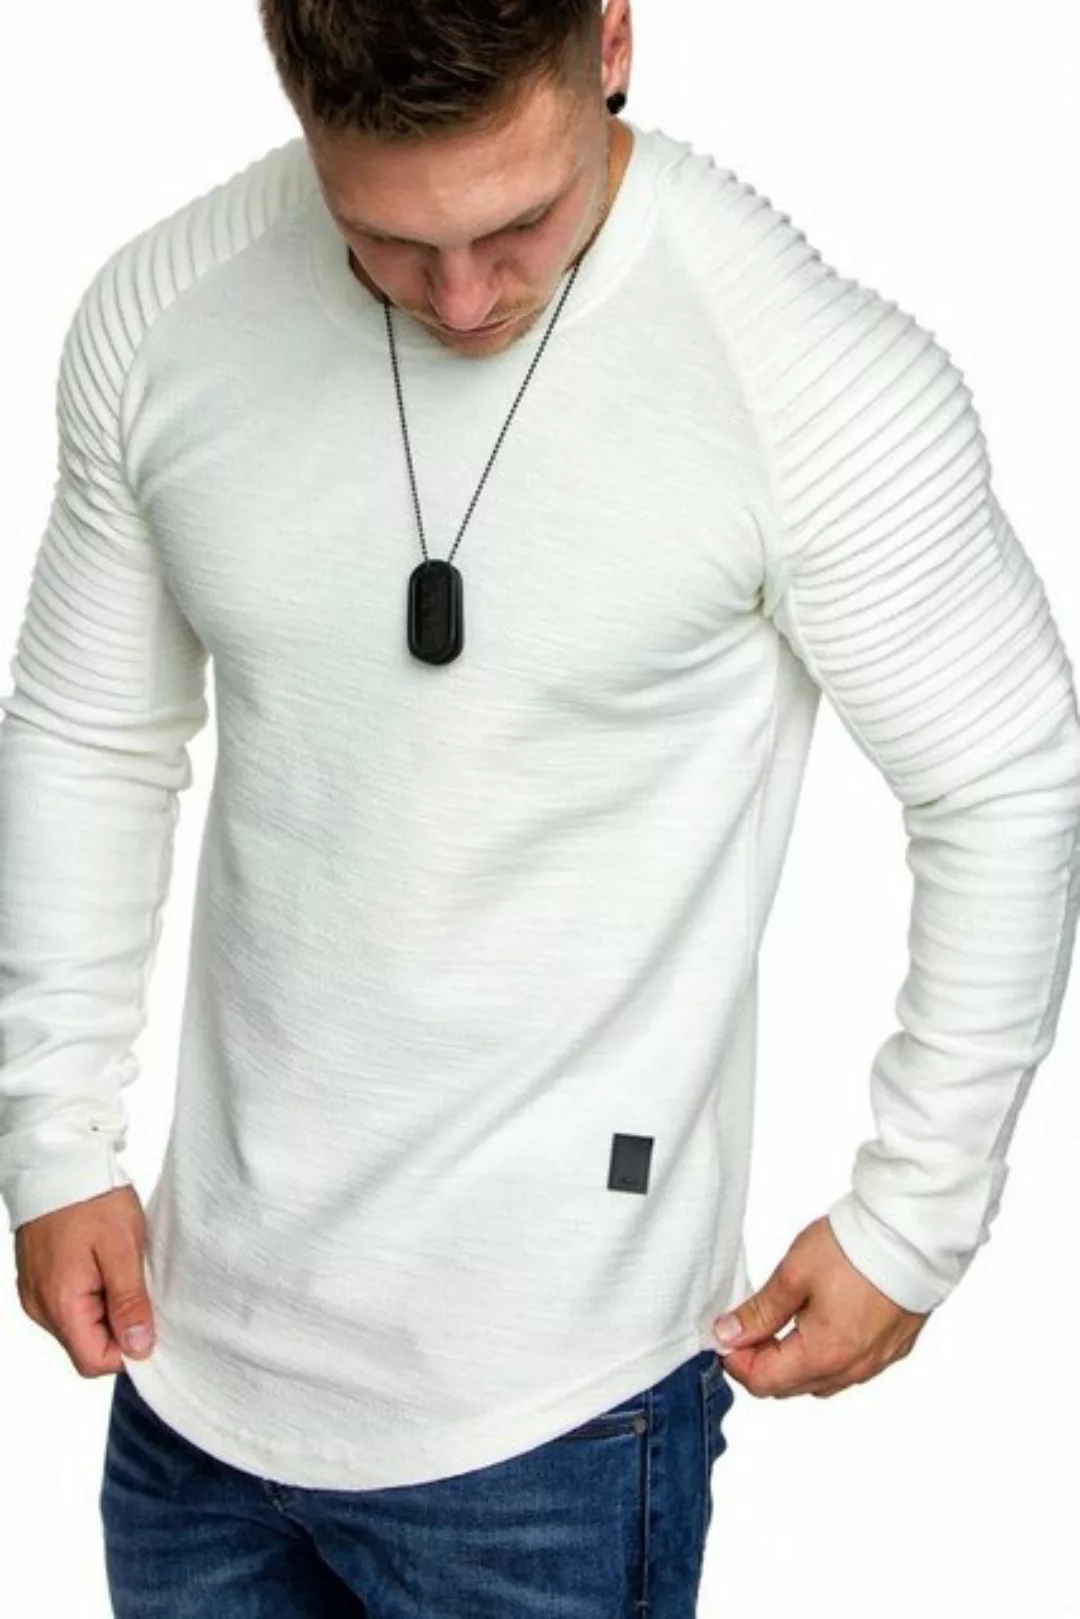 Amaci&Sons Sweatshirt Gresham Sweatshirt Herren Basic Kontrast Sweatjacke P günstig online kaufen